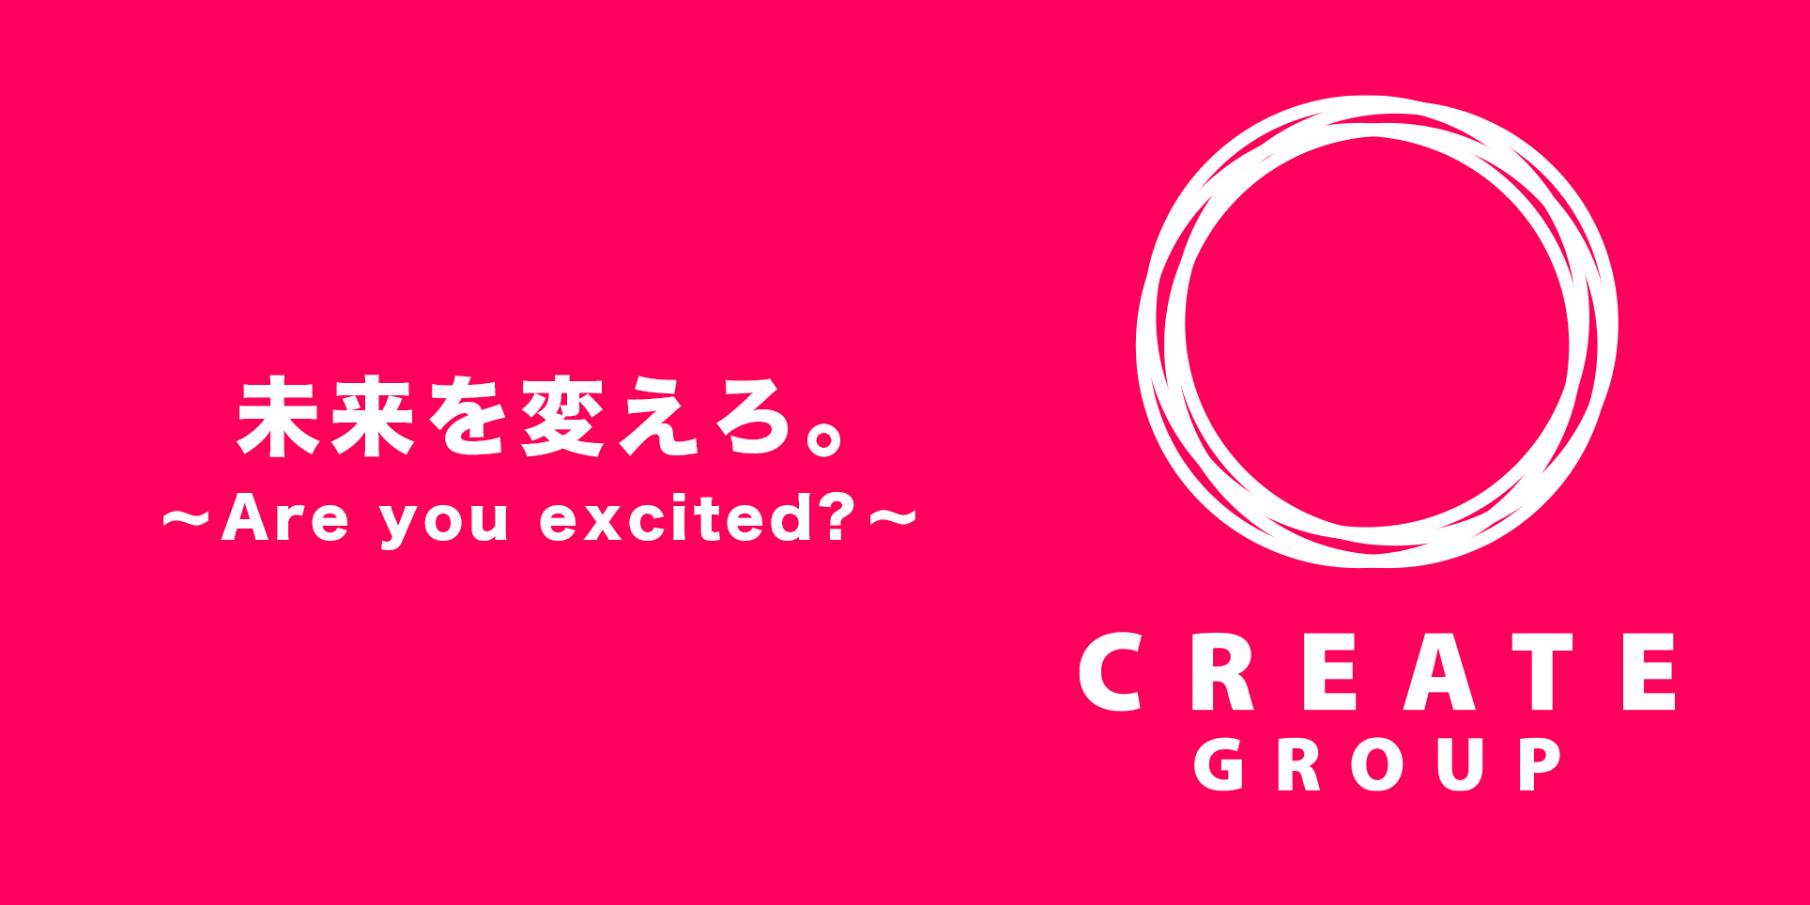 名古屋のホストクラブ「CREATE」の求人宣伝。